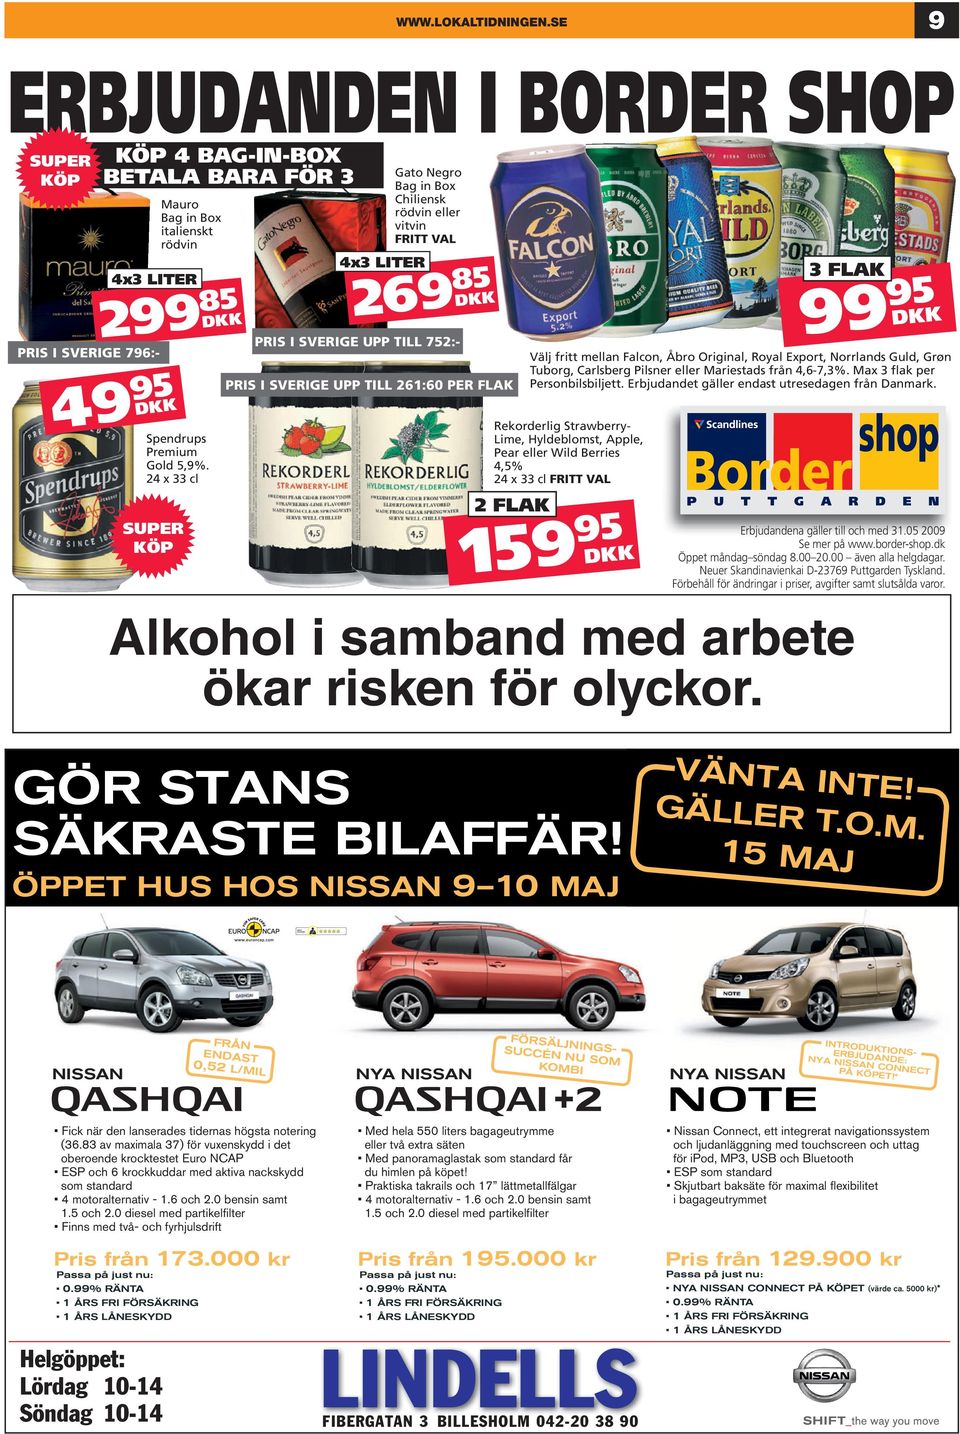 TILL 752:- DKK PRIS I SVERIGE UPP TILL 261:60 PER FLAK Alkohol i samband med arbete ökar risken för olyckor.